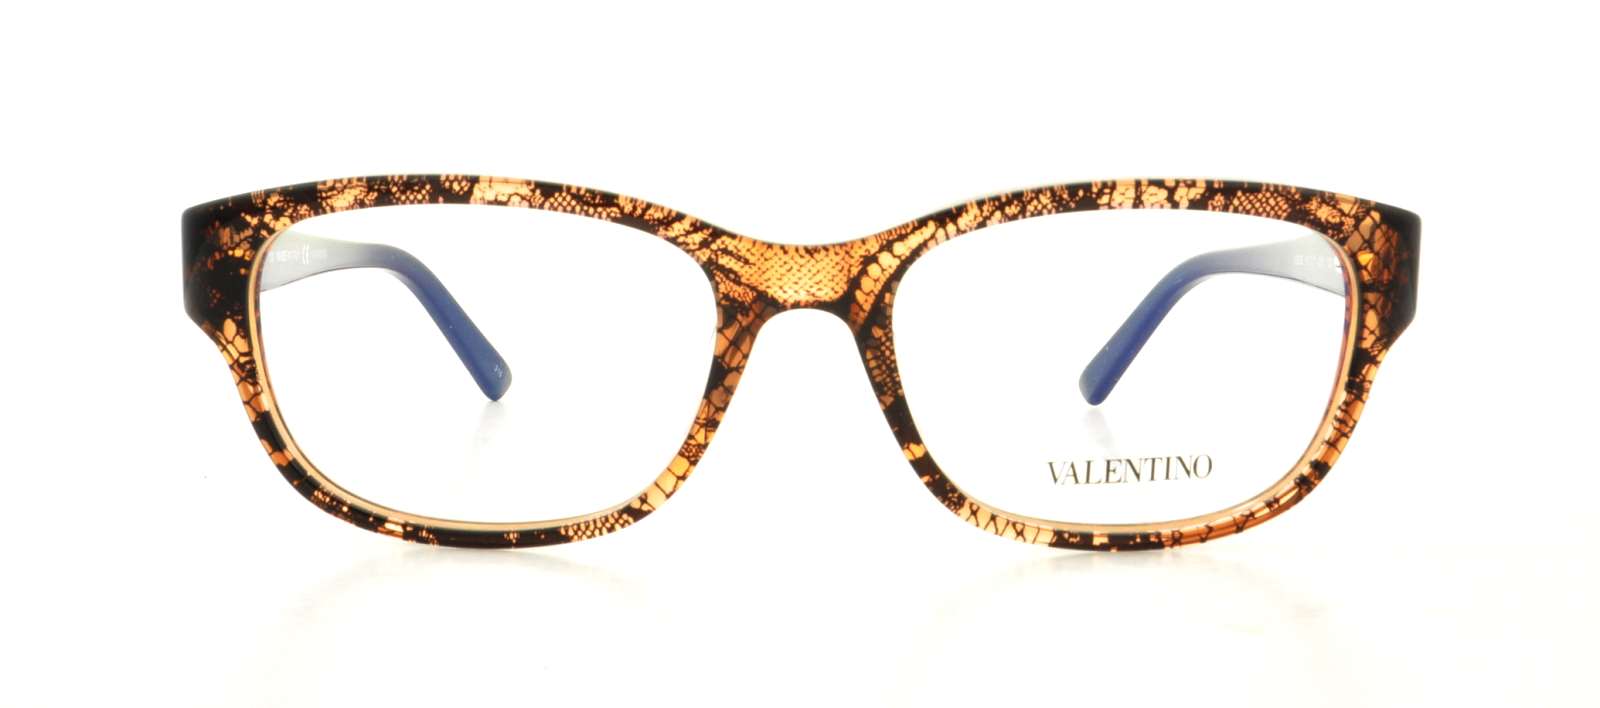 Designer Frames Outlet. Valentino Eyeglasses V2629